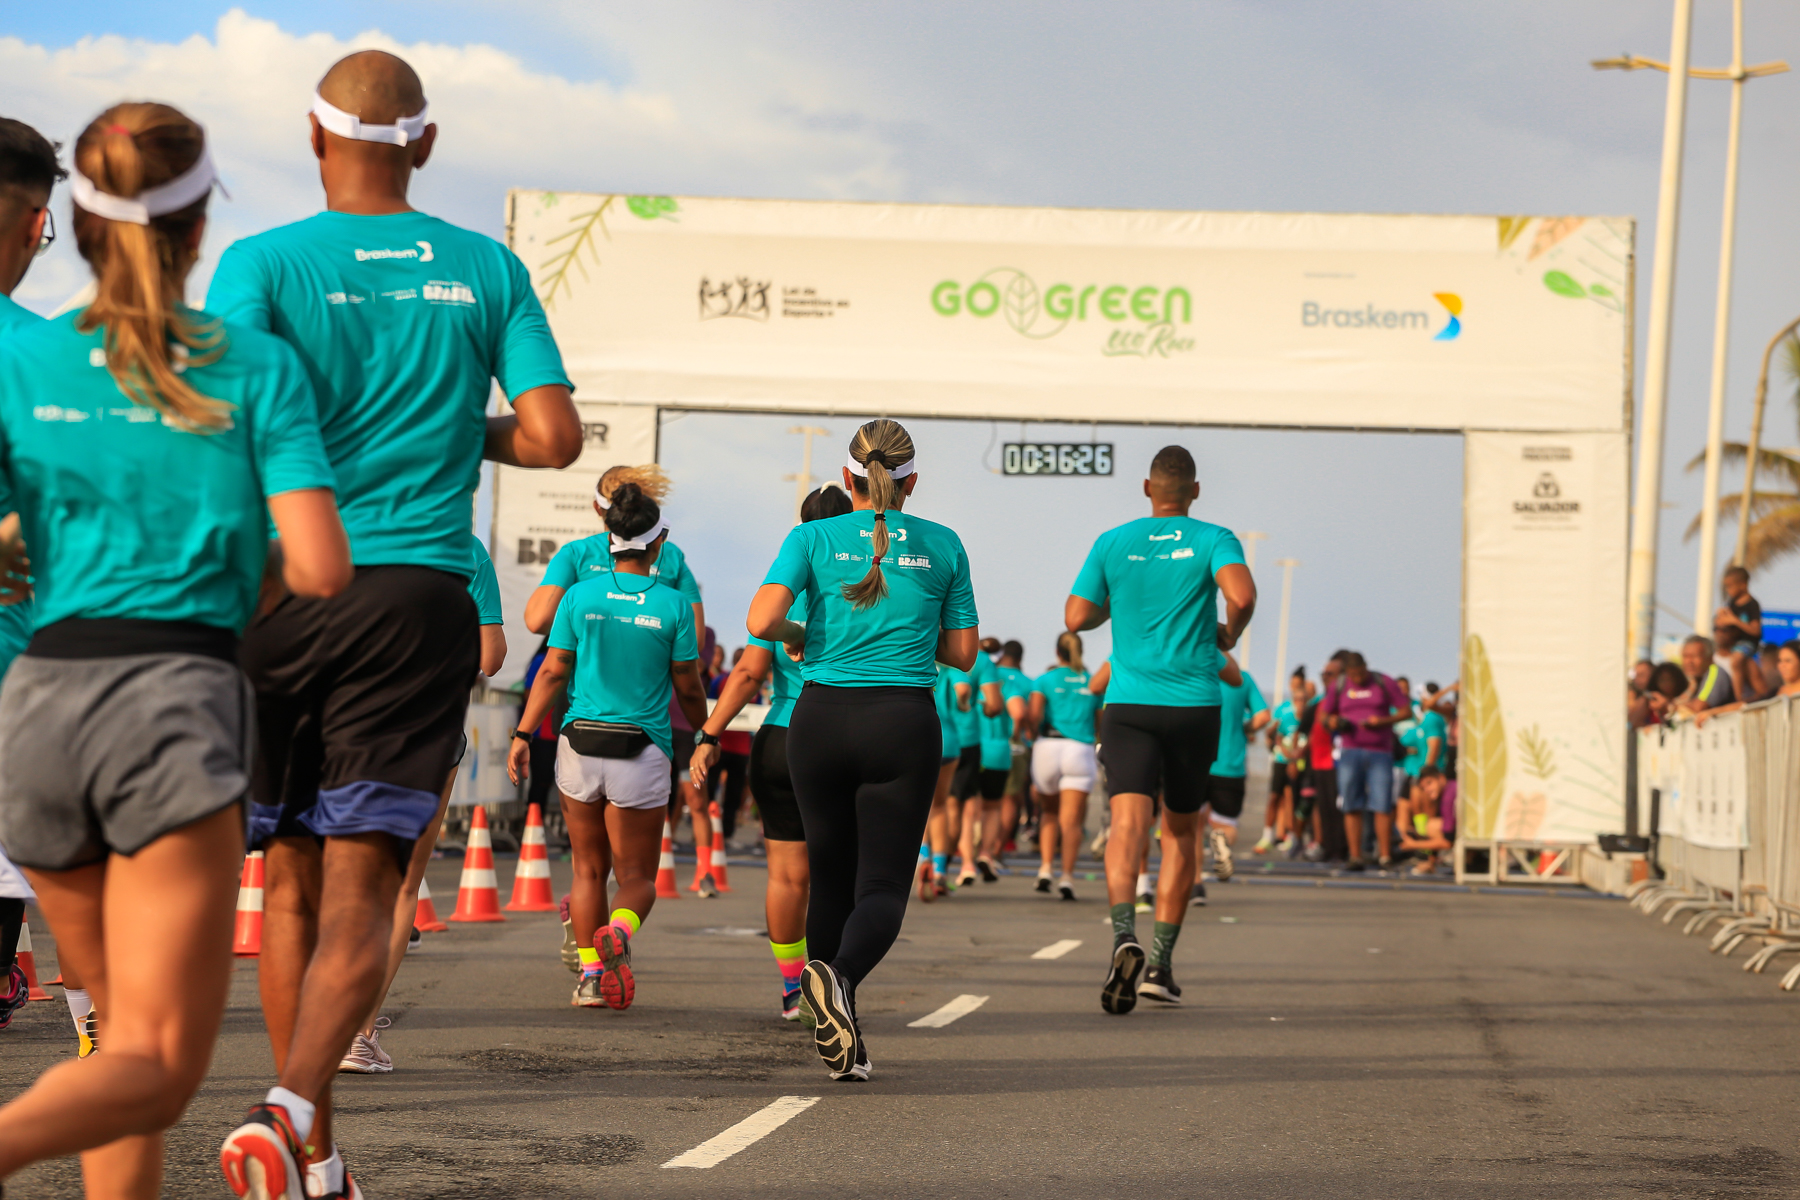 Três mil corredores disputam a Go Green Eco Race neste domingo